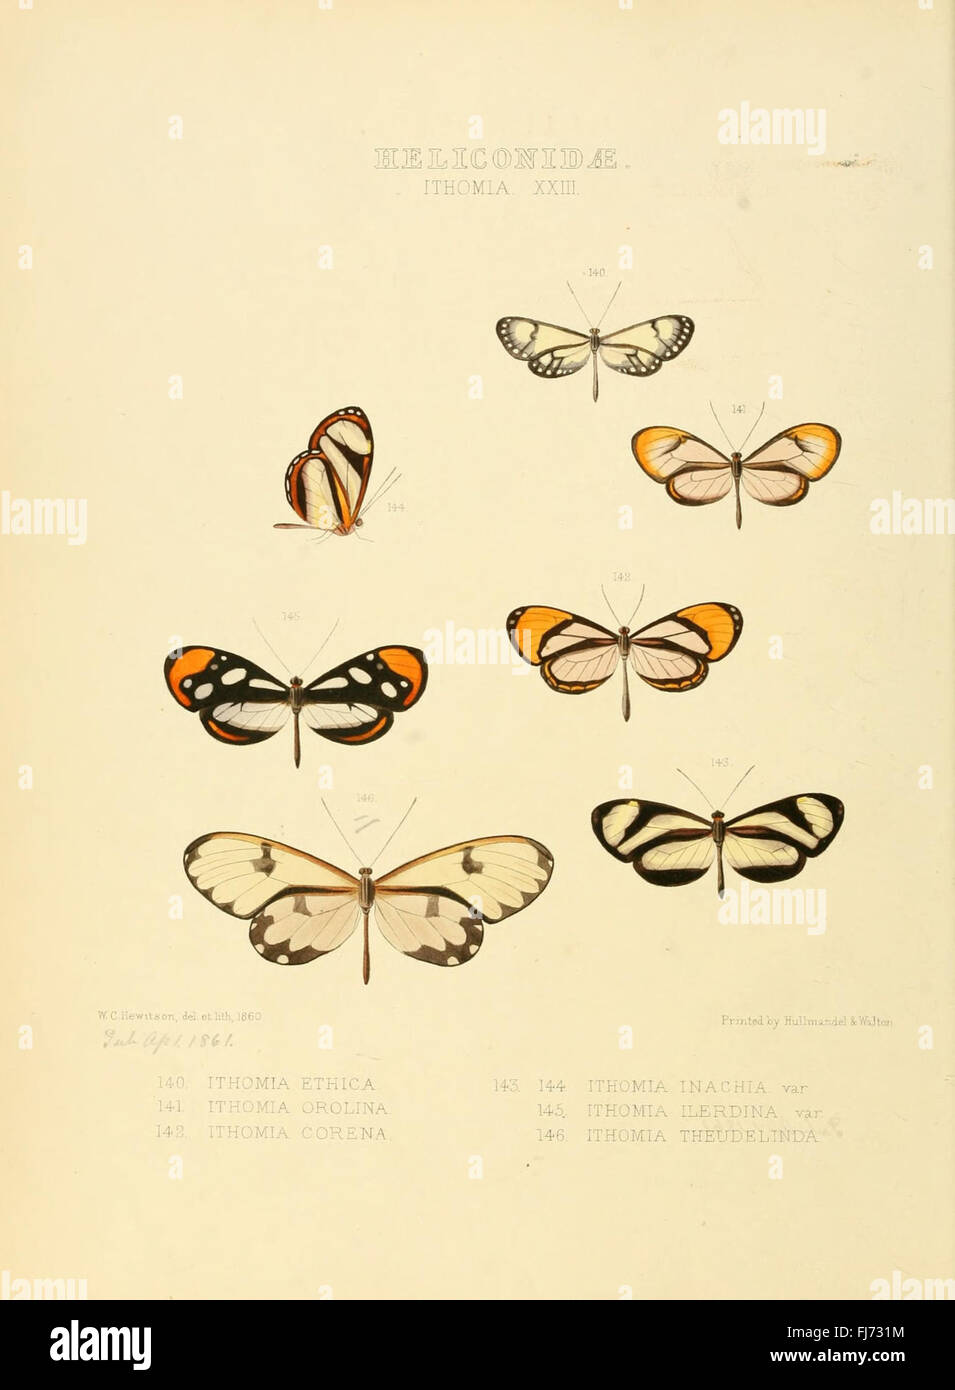 Illustrazioni di nuove specie di farfalle esotiche (Heliconidae- Ithomia XXIII) Foto Stock